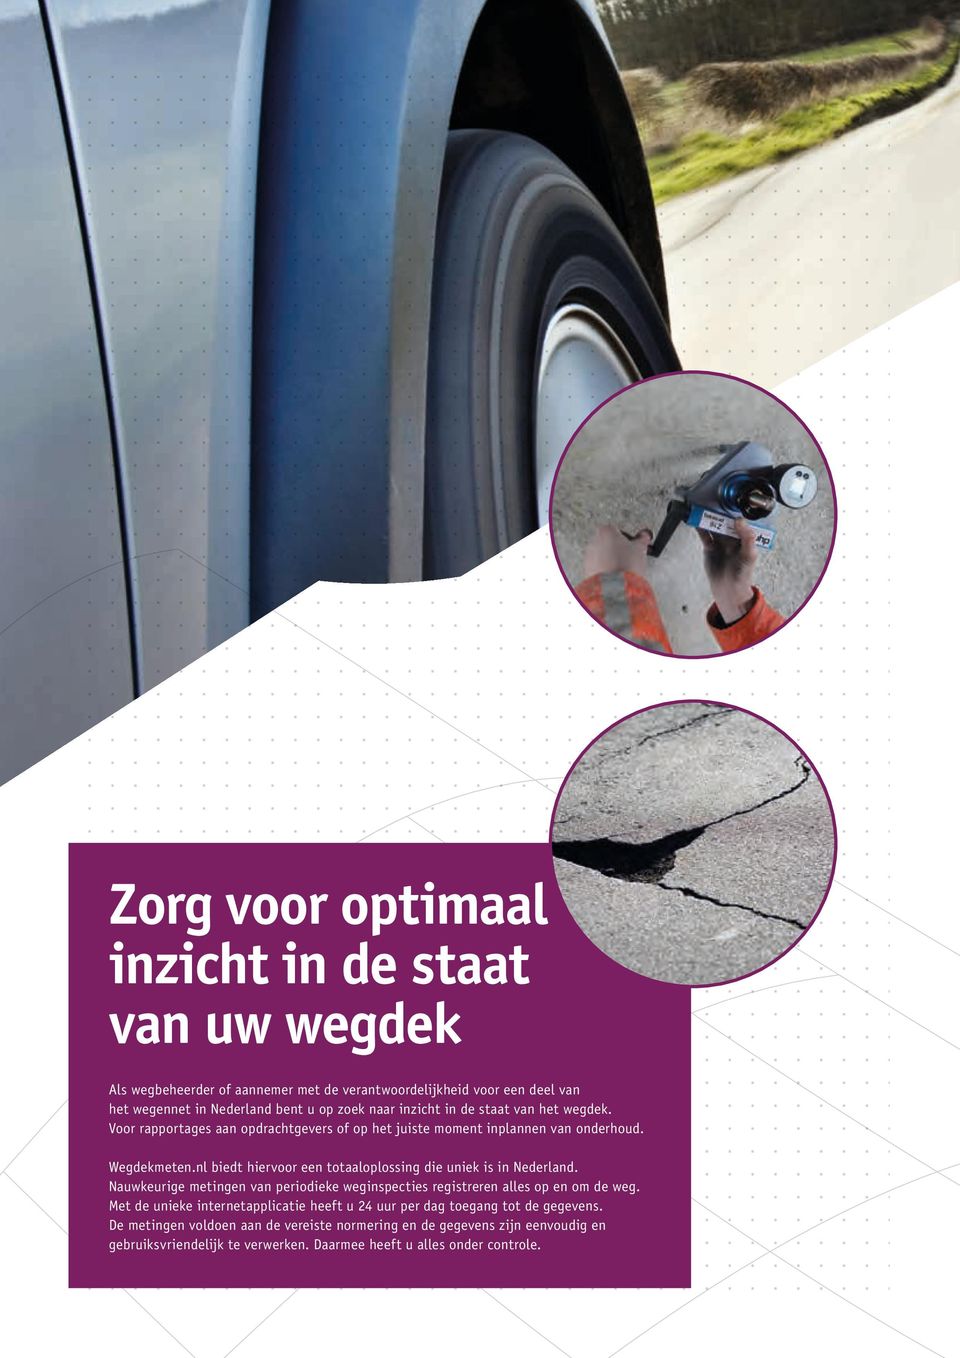 nl biedt hiervoor een totaaloplossing die uniek is in Nederland. Nauw keurige metingen van periodieke weginspecties registreren alles op en om de weg.